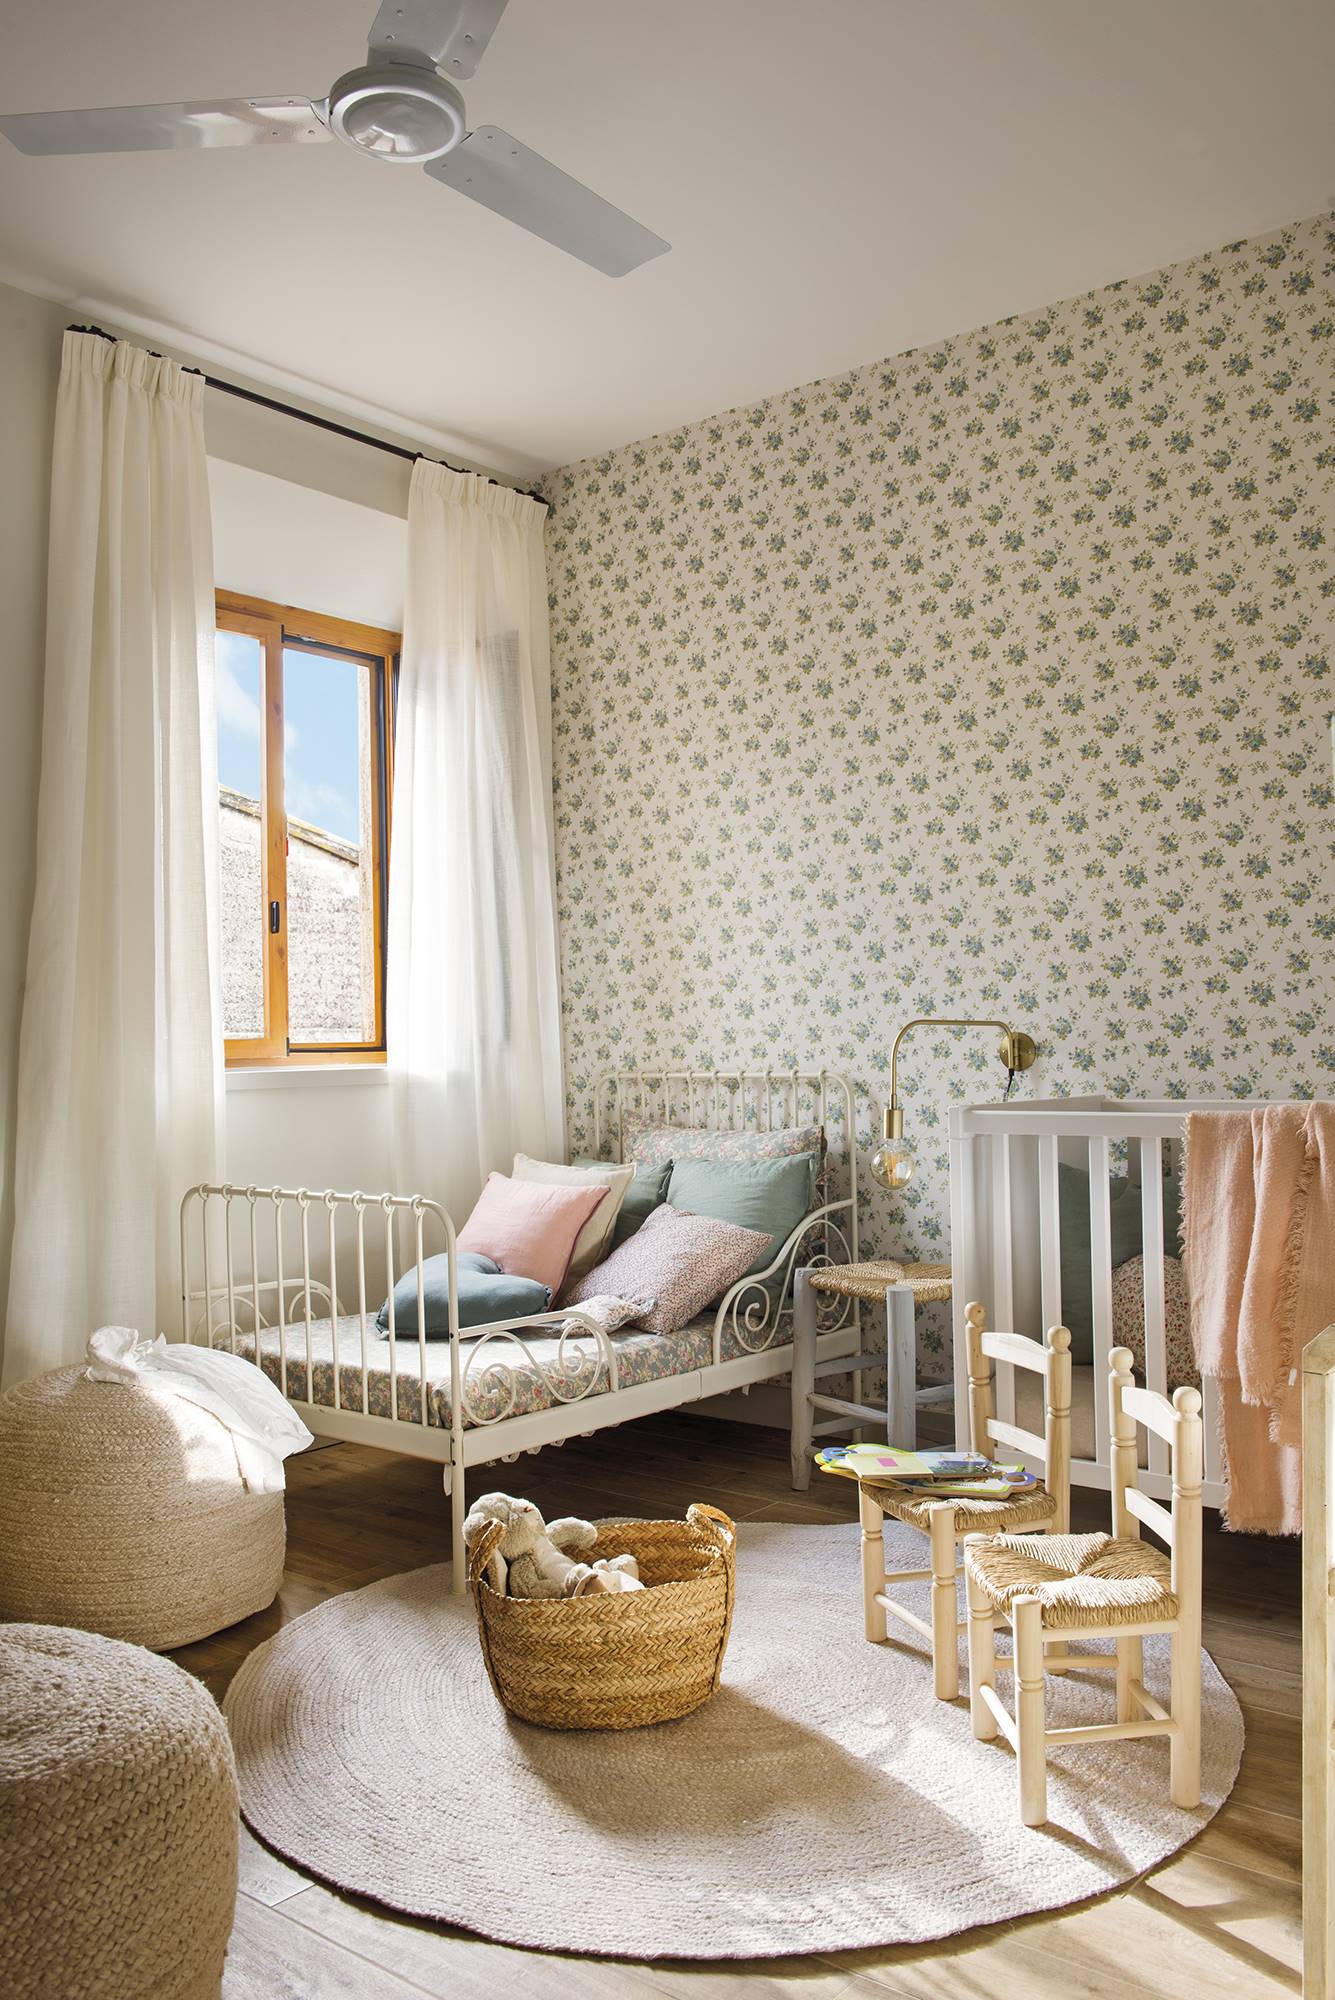 Habitación infantil con cama de forja blanca y cuna, muebles de fibras naturales y papel pintado floral DSC 8496